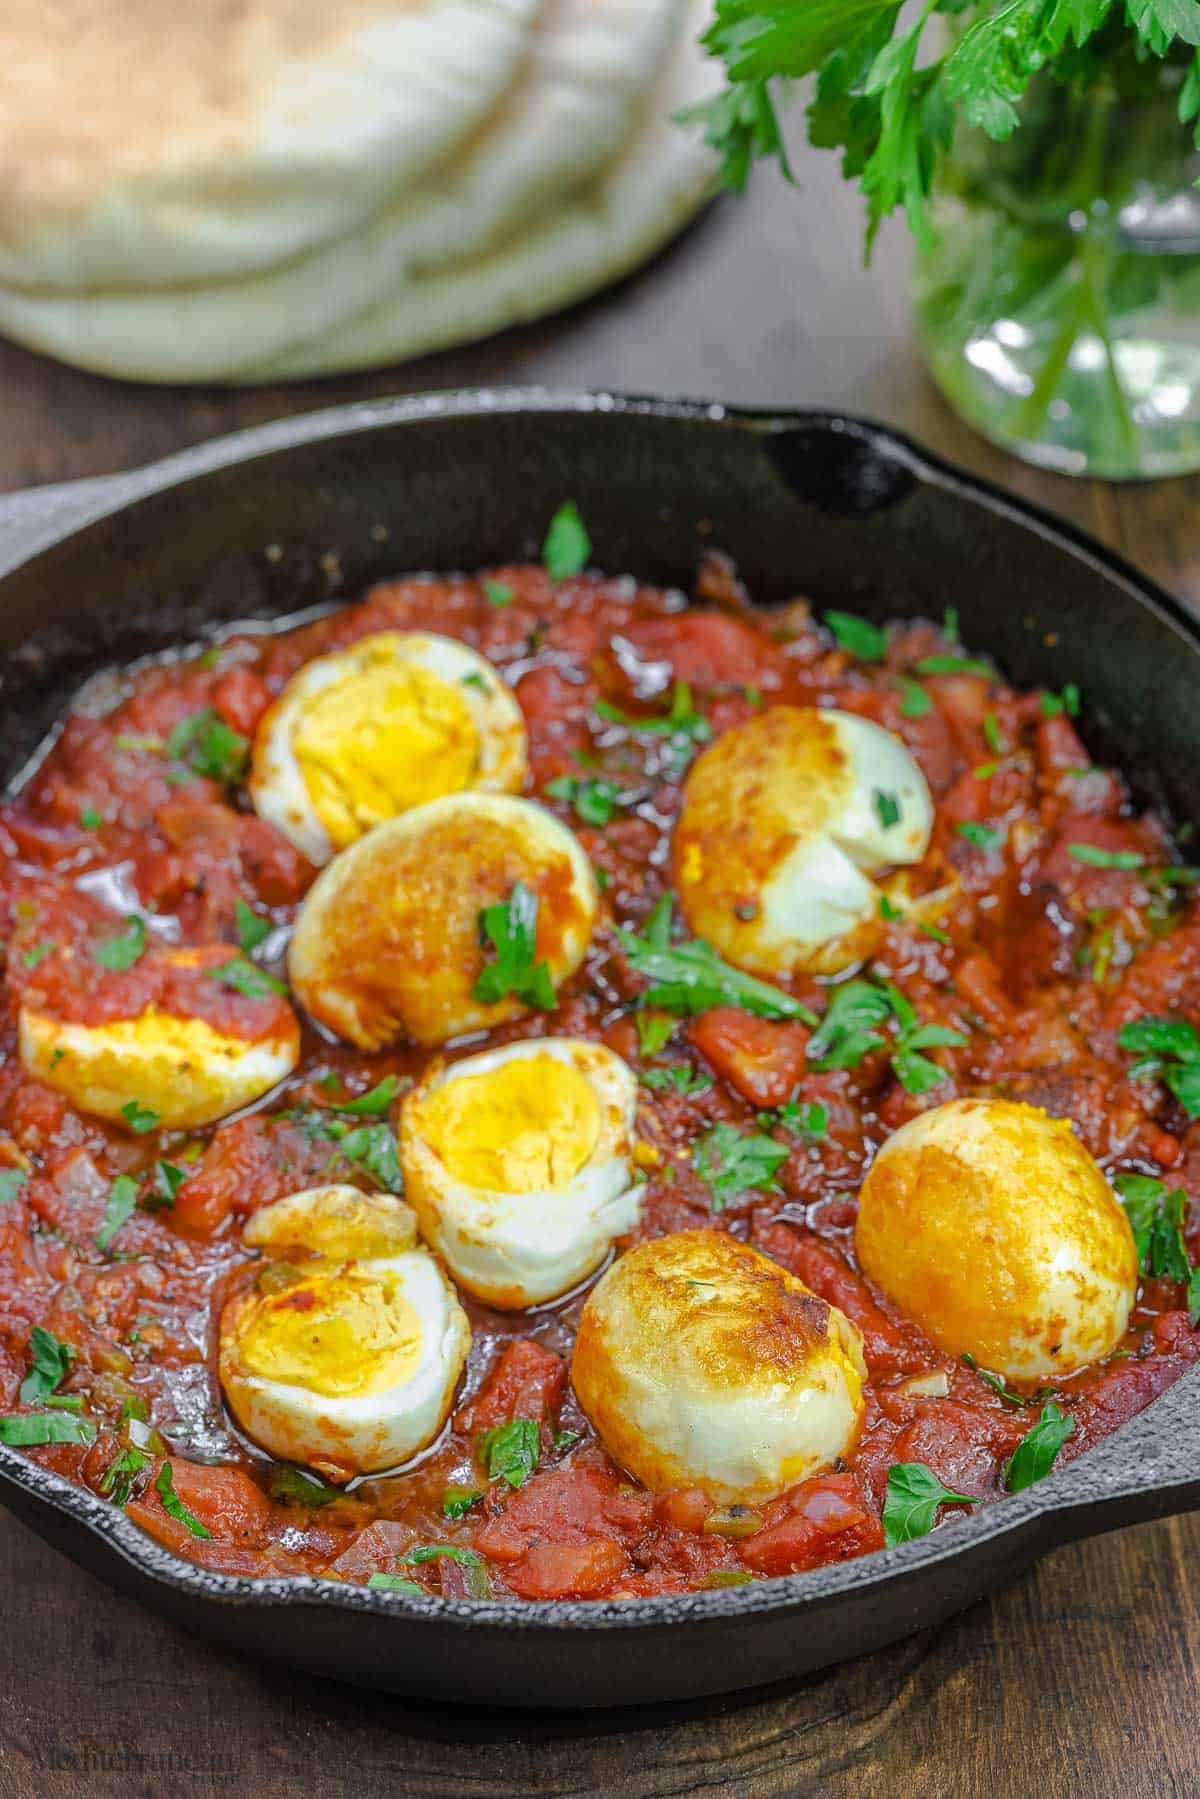 œufs dans une sauce tomate italienne épicée avec une pile de pain pita et quelques herbes à côté